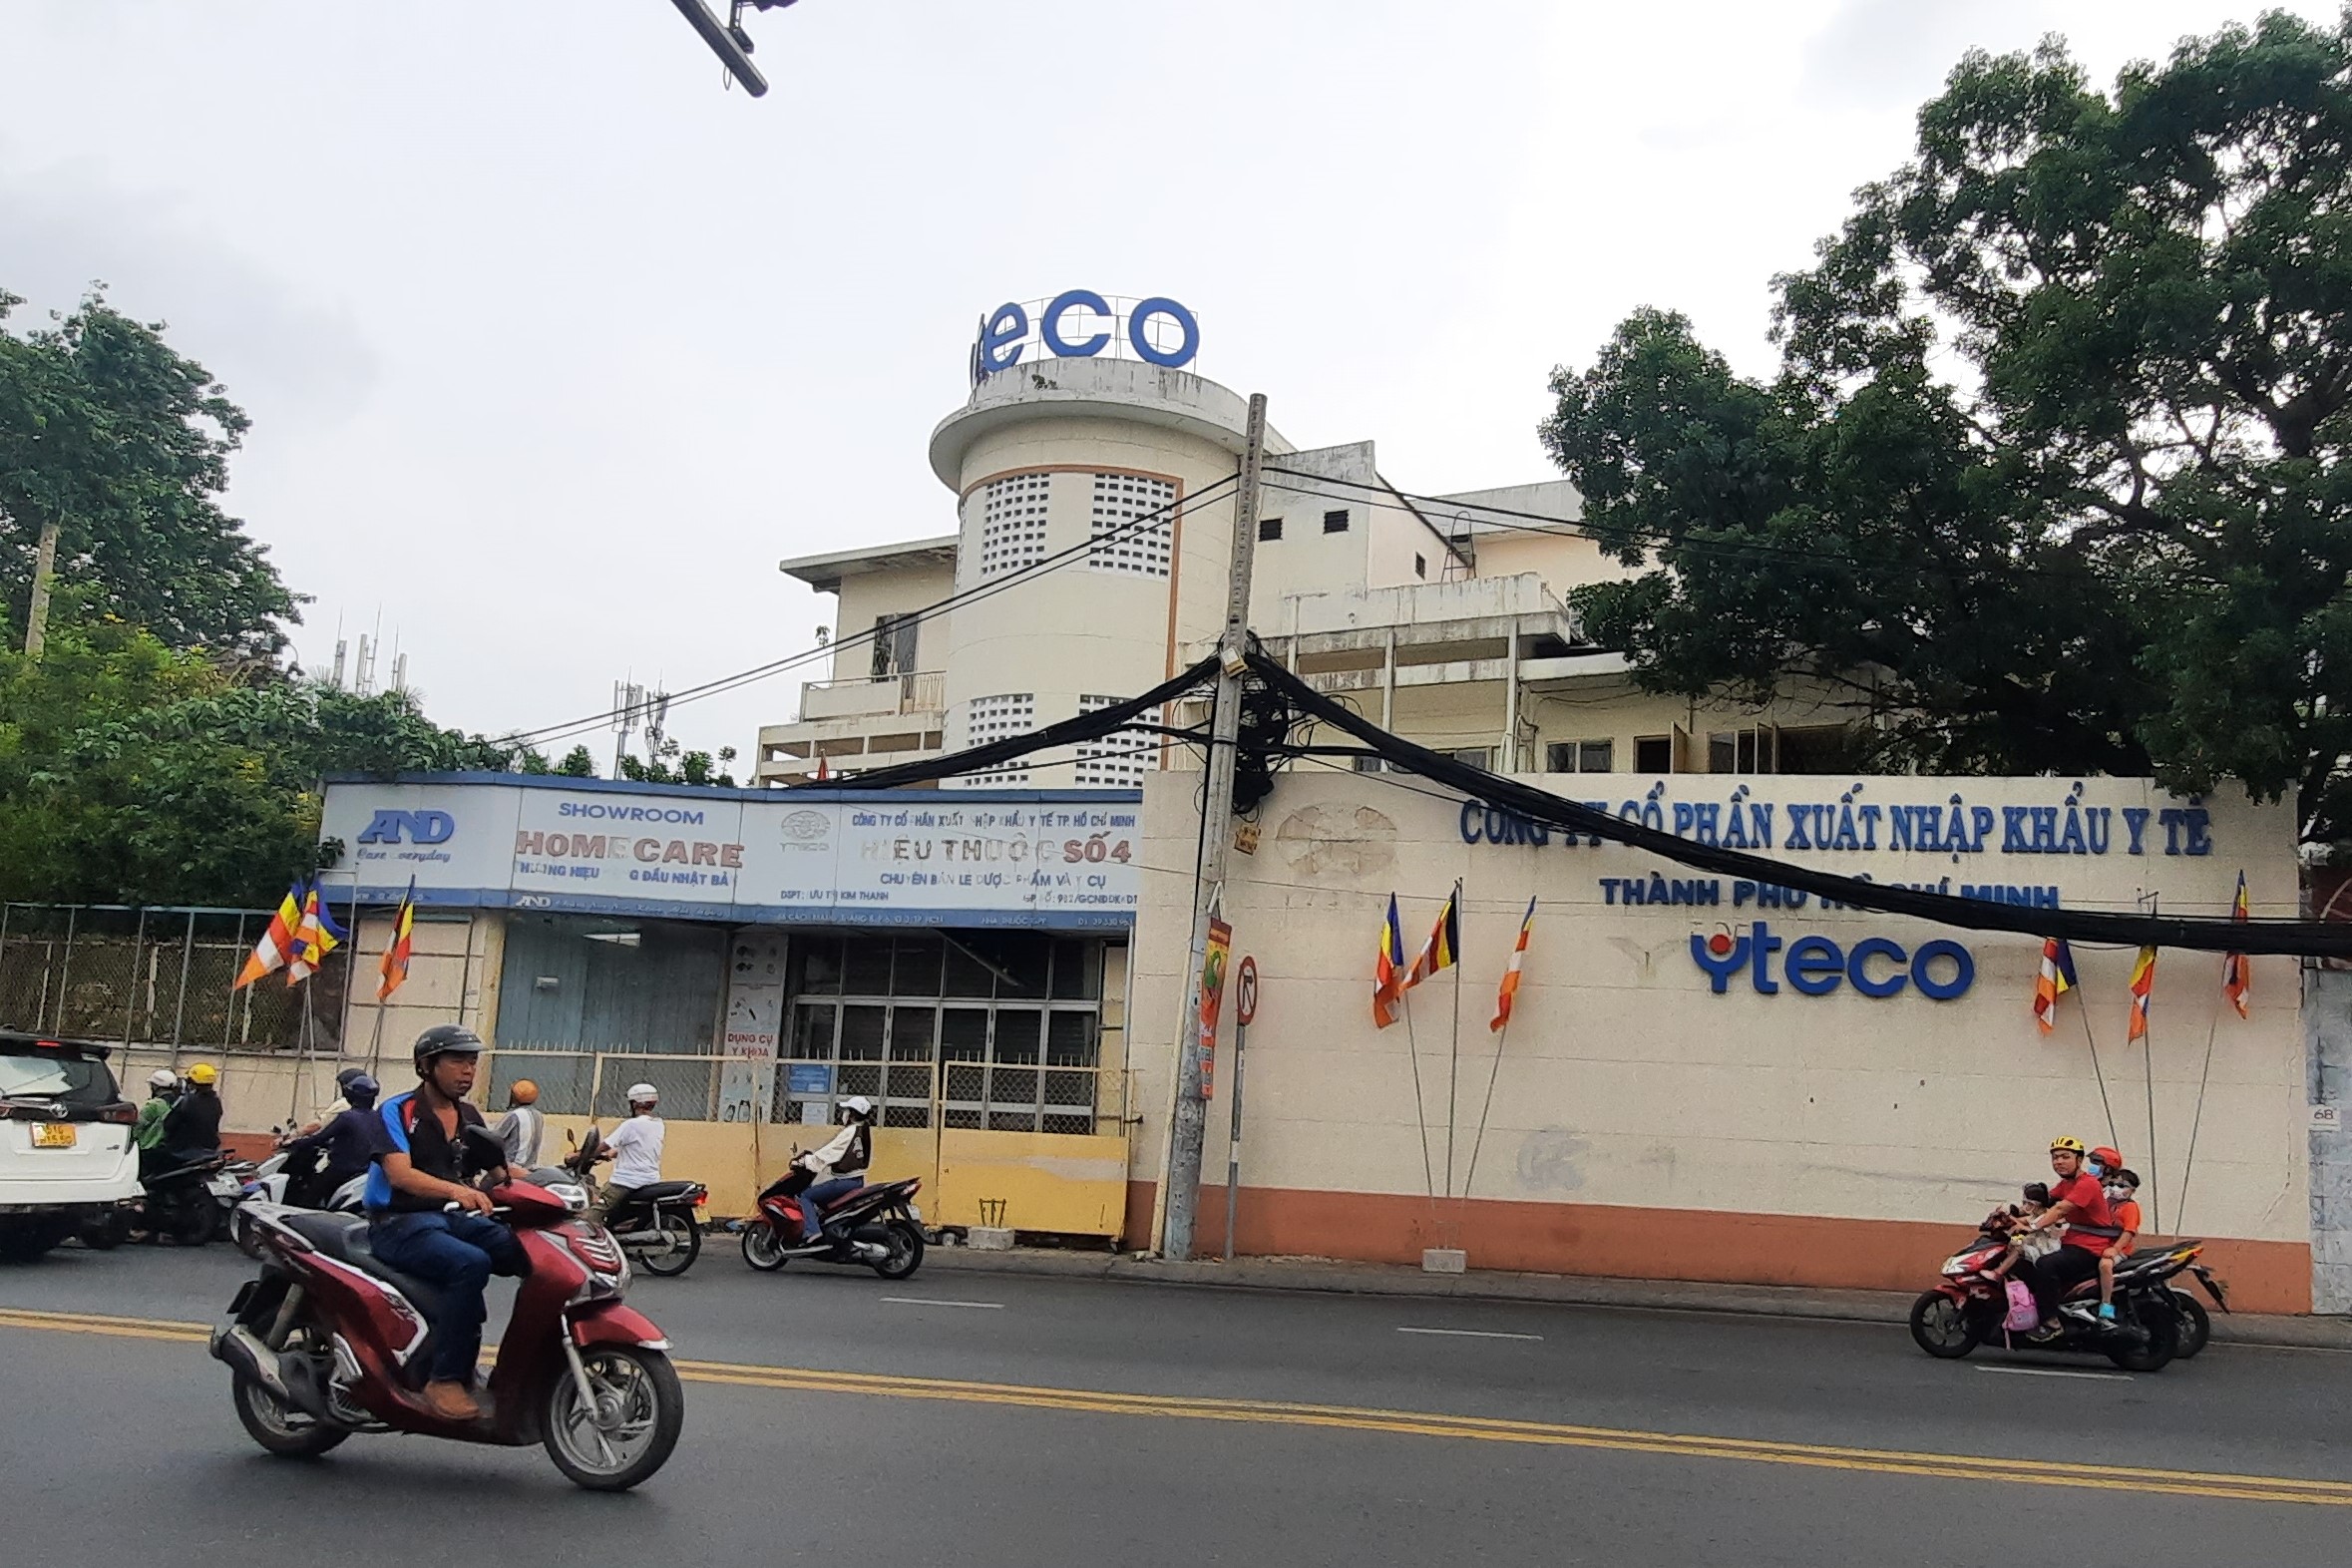 Công ty Cổ phần Xuất nhập khẩu Y tế TP. Hồ Chí Minh sử dụng đất công sai mục đích thế nào?